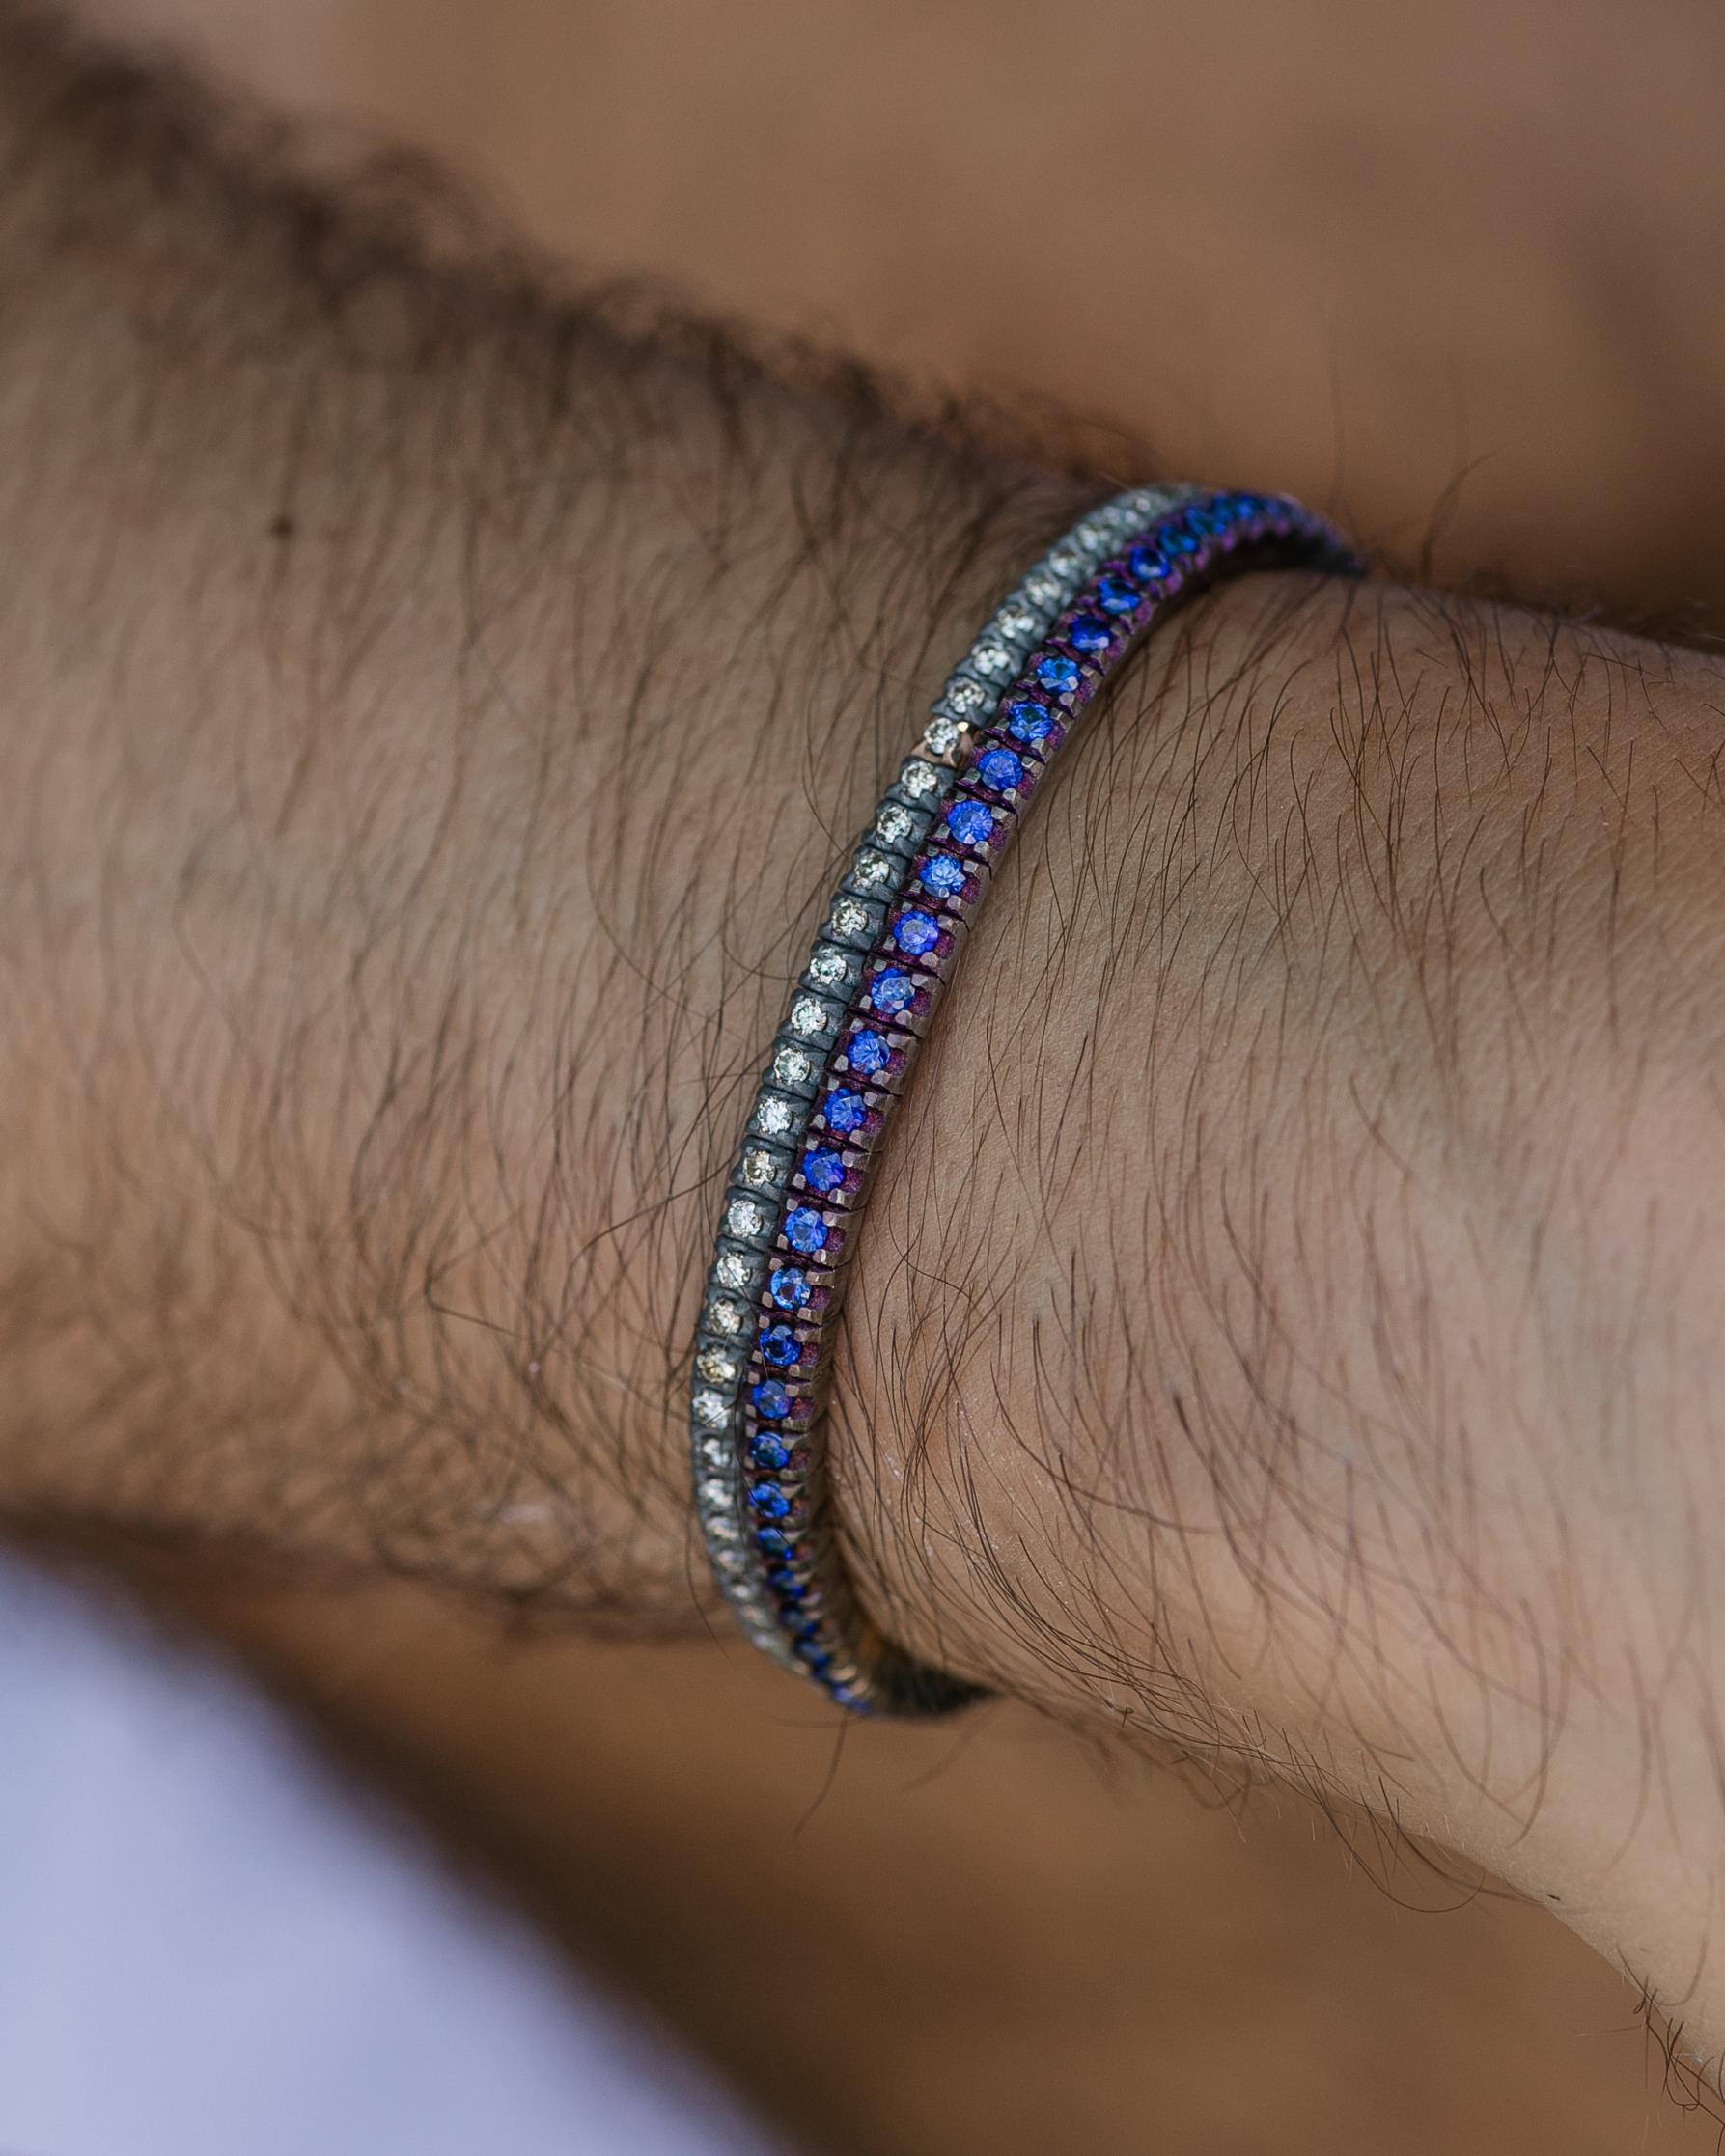 Das flexible TITANIUM-Armband ist aus unserer Men'S Collection. Das Armband ist mit wunderschönen natürlichen braunen Diamanten von insgesamt 0,20 Karat und Details aus 18 Karat Roségold verziert. Der Durchmesser des Armbands beträgt 6,5 cm. Perfekt